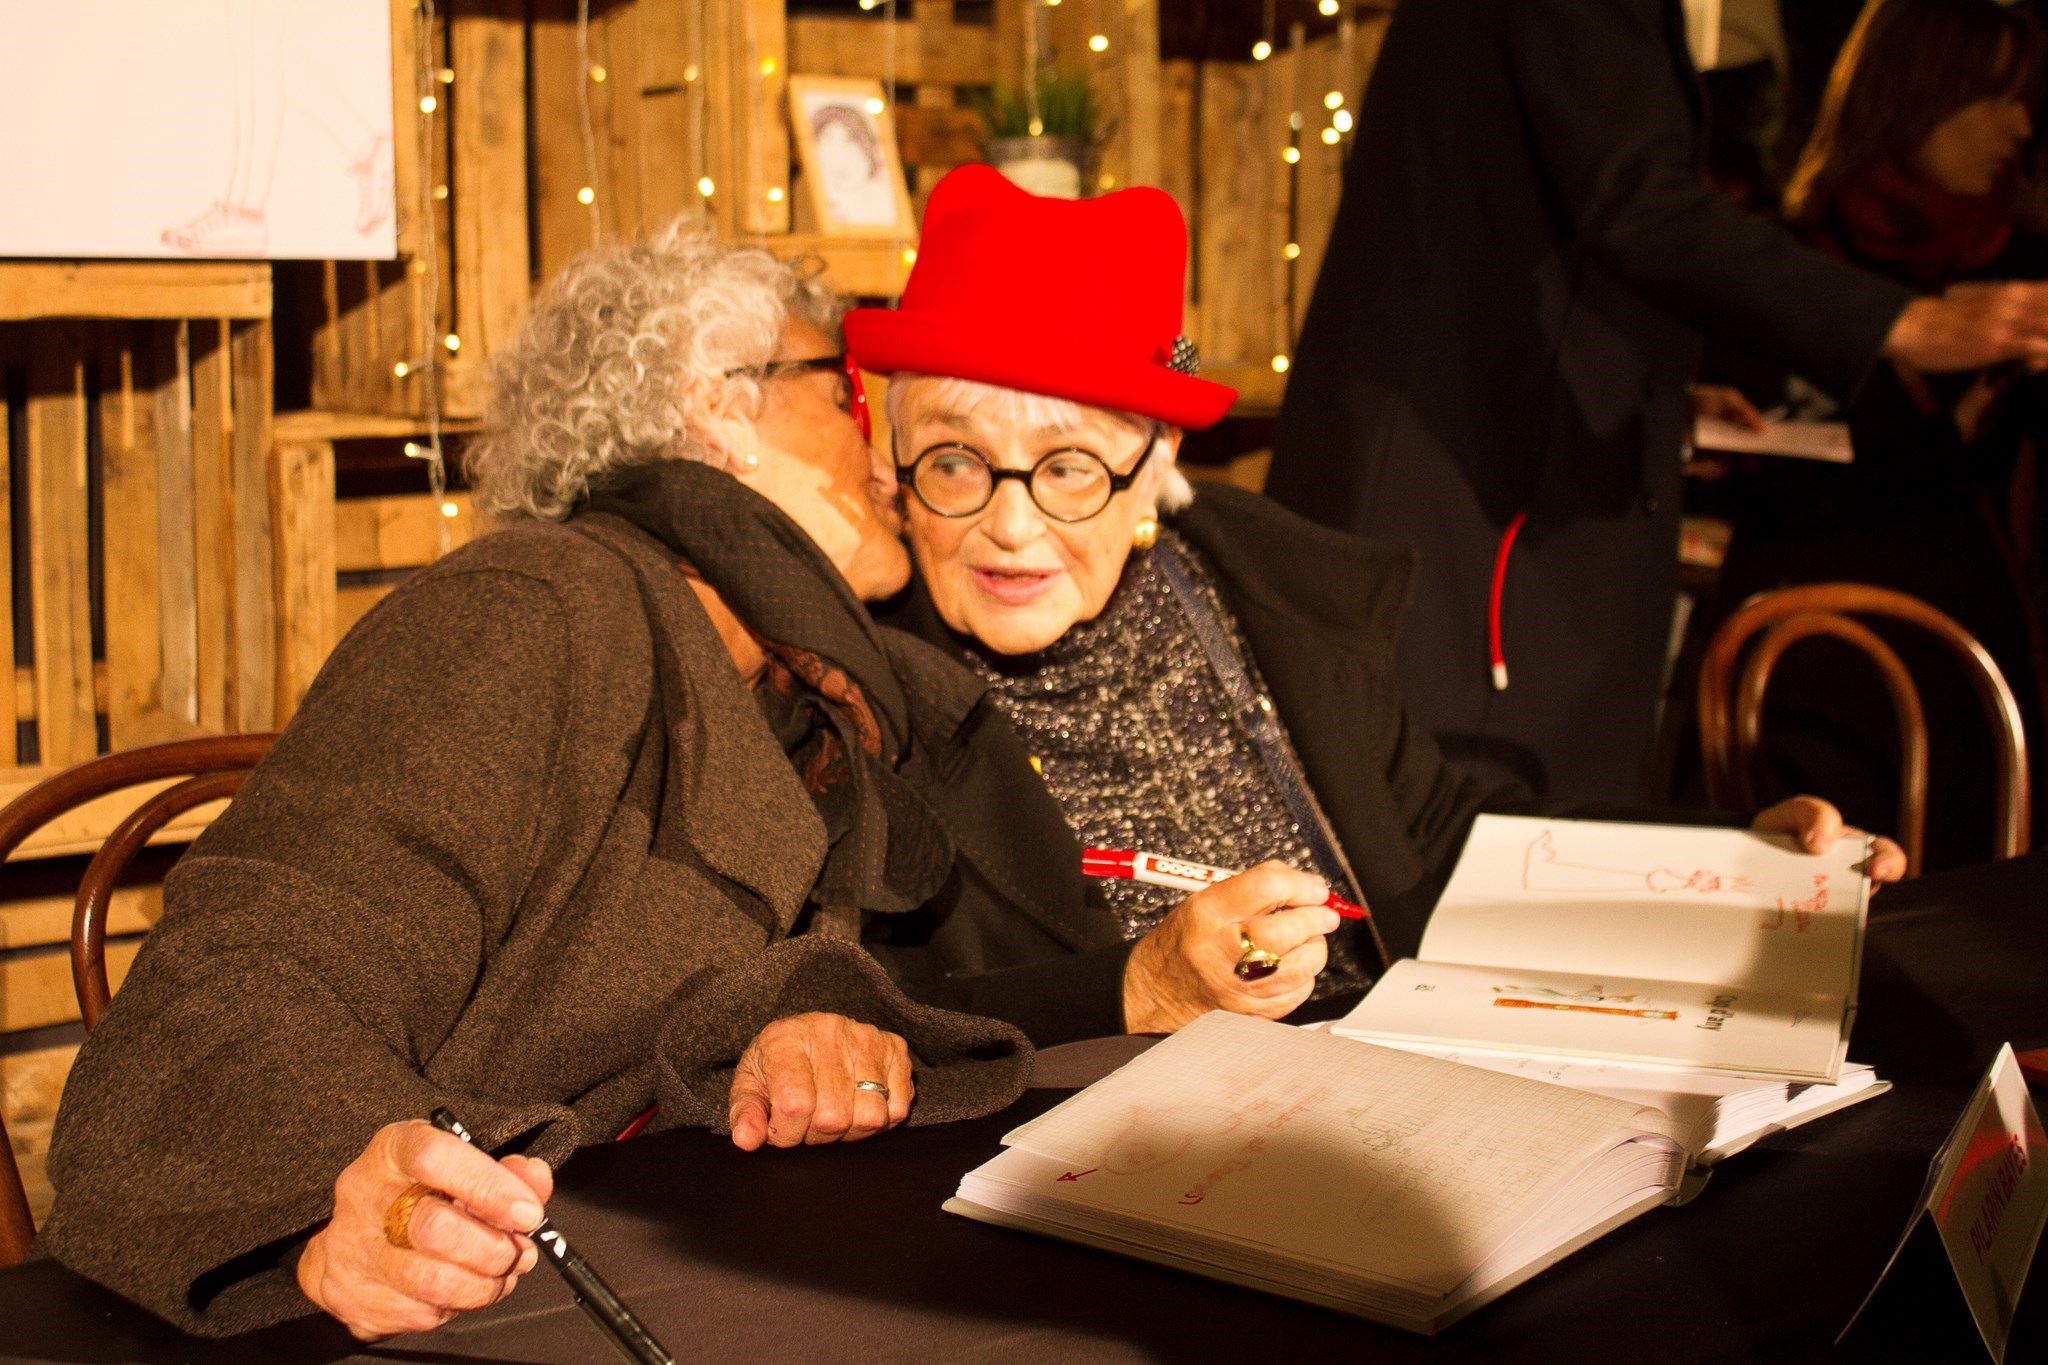  Roser Capdevila i Pilarín Bayés signant llibres